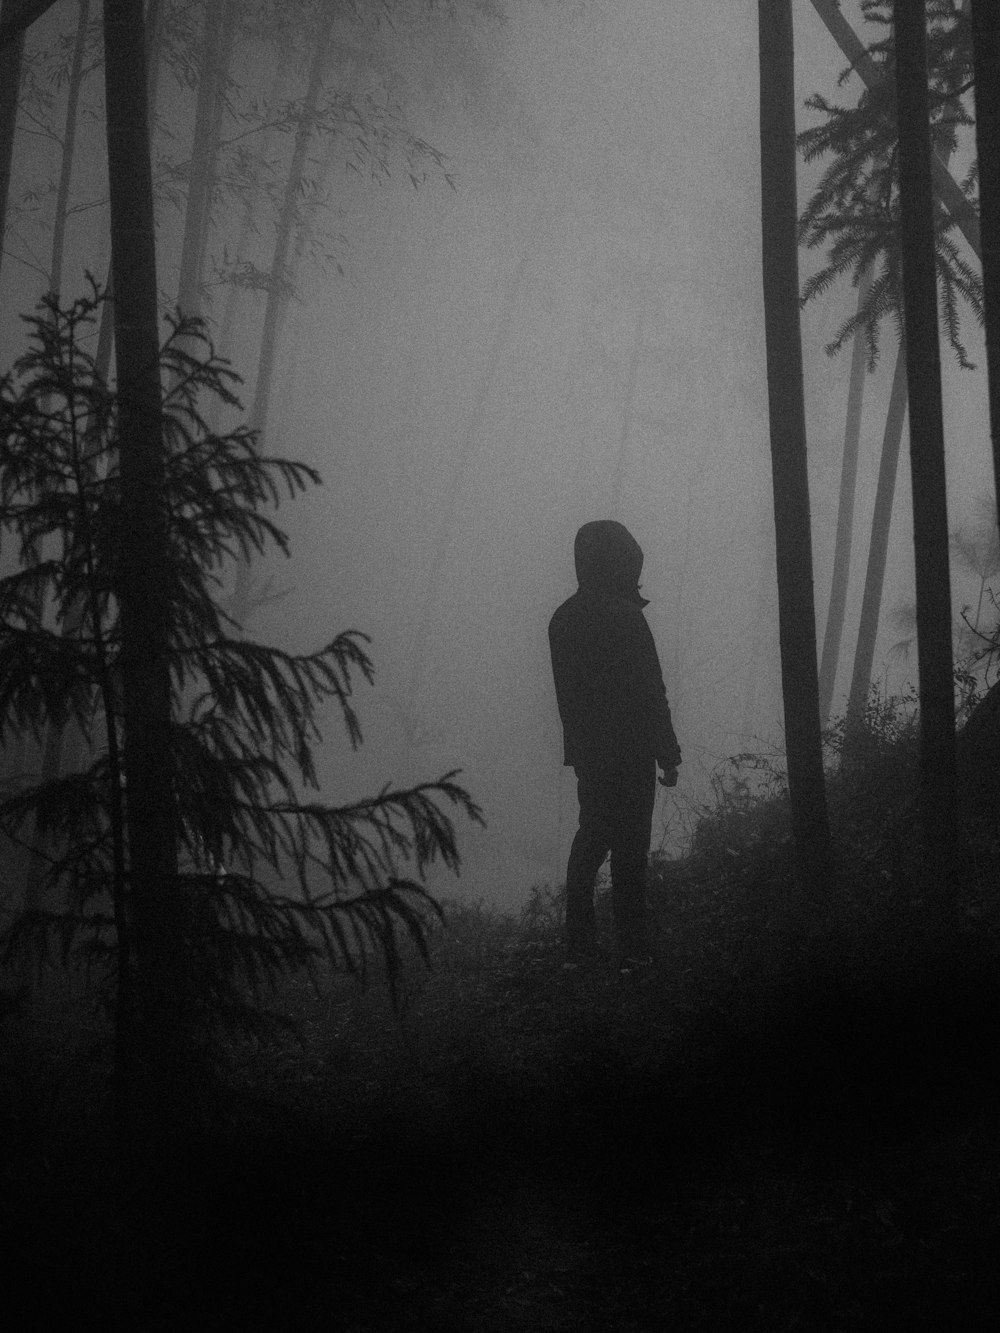 Eine Person, die an einem nebligen Tag mitten in einem Wald steht